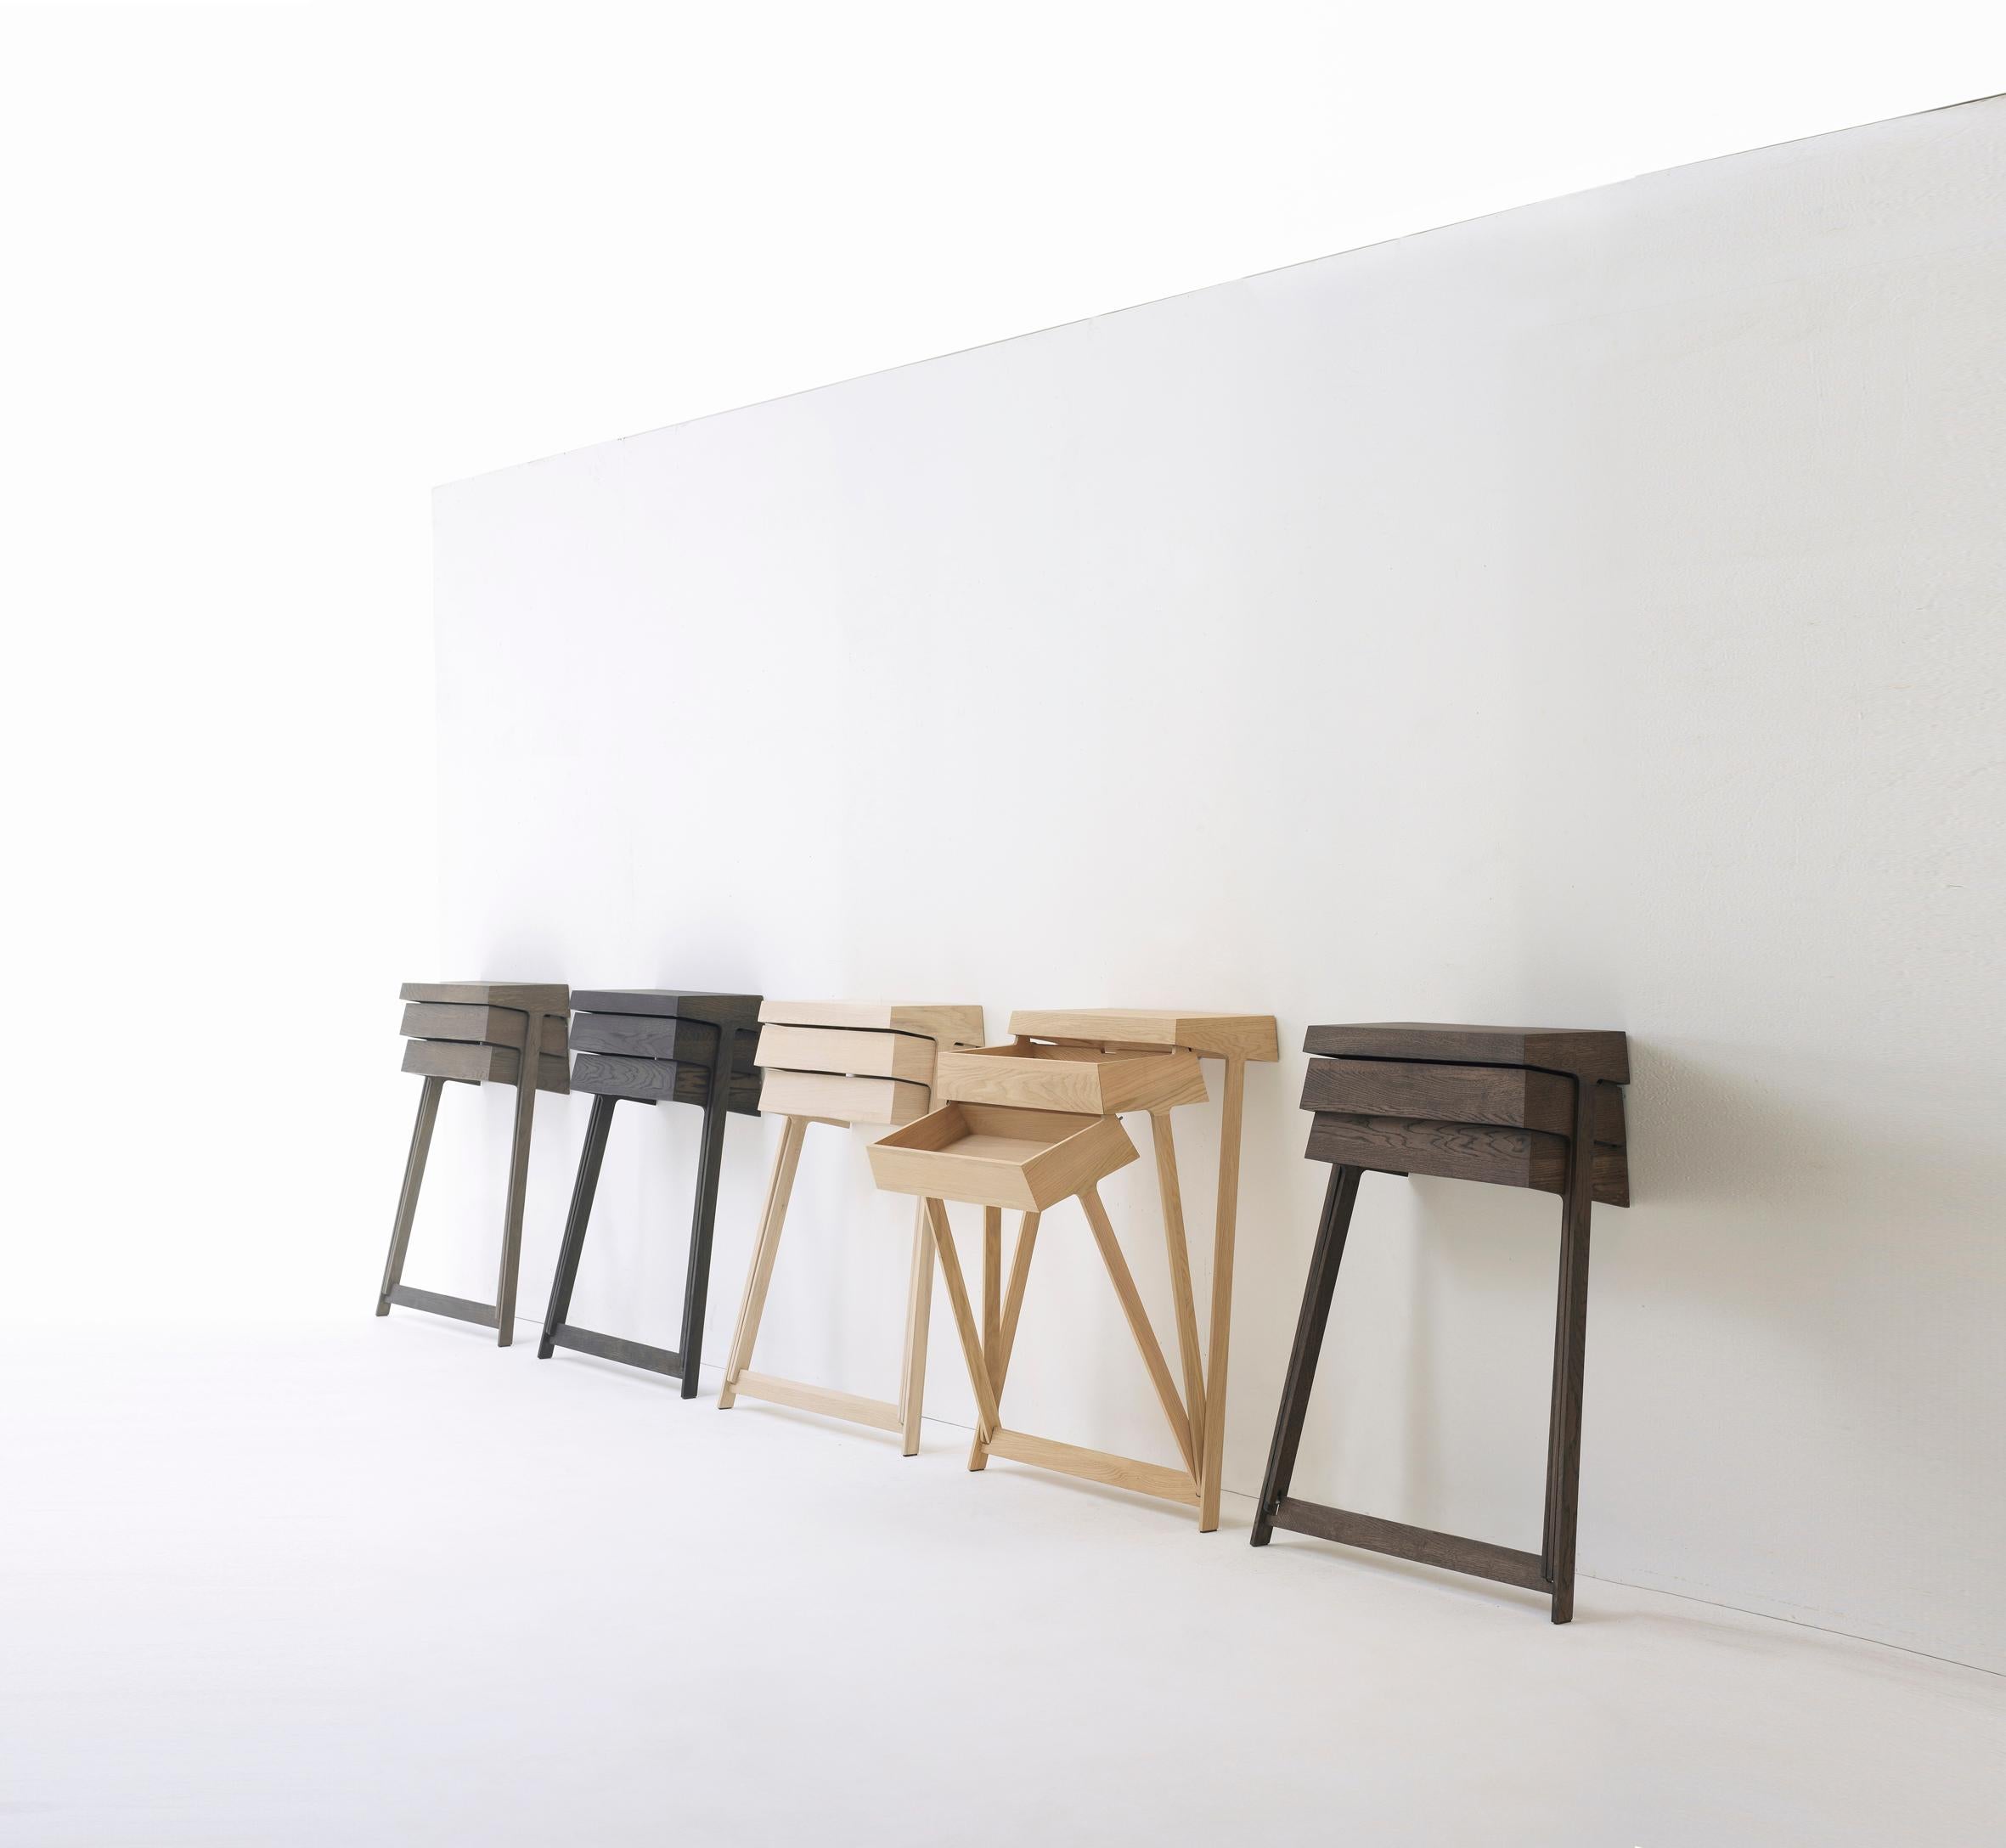 Pivot est une armoire en bois massif qui repose sur des pieds hauts et comporte deux tiroirs. L'aspect innovant de ce meuble réside dans le fait que les tiroirs peuvent s'articuler, ce qui permet d'ouvrir les deux tiroirs en même temps, ce qui est